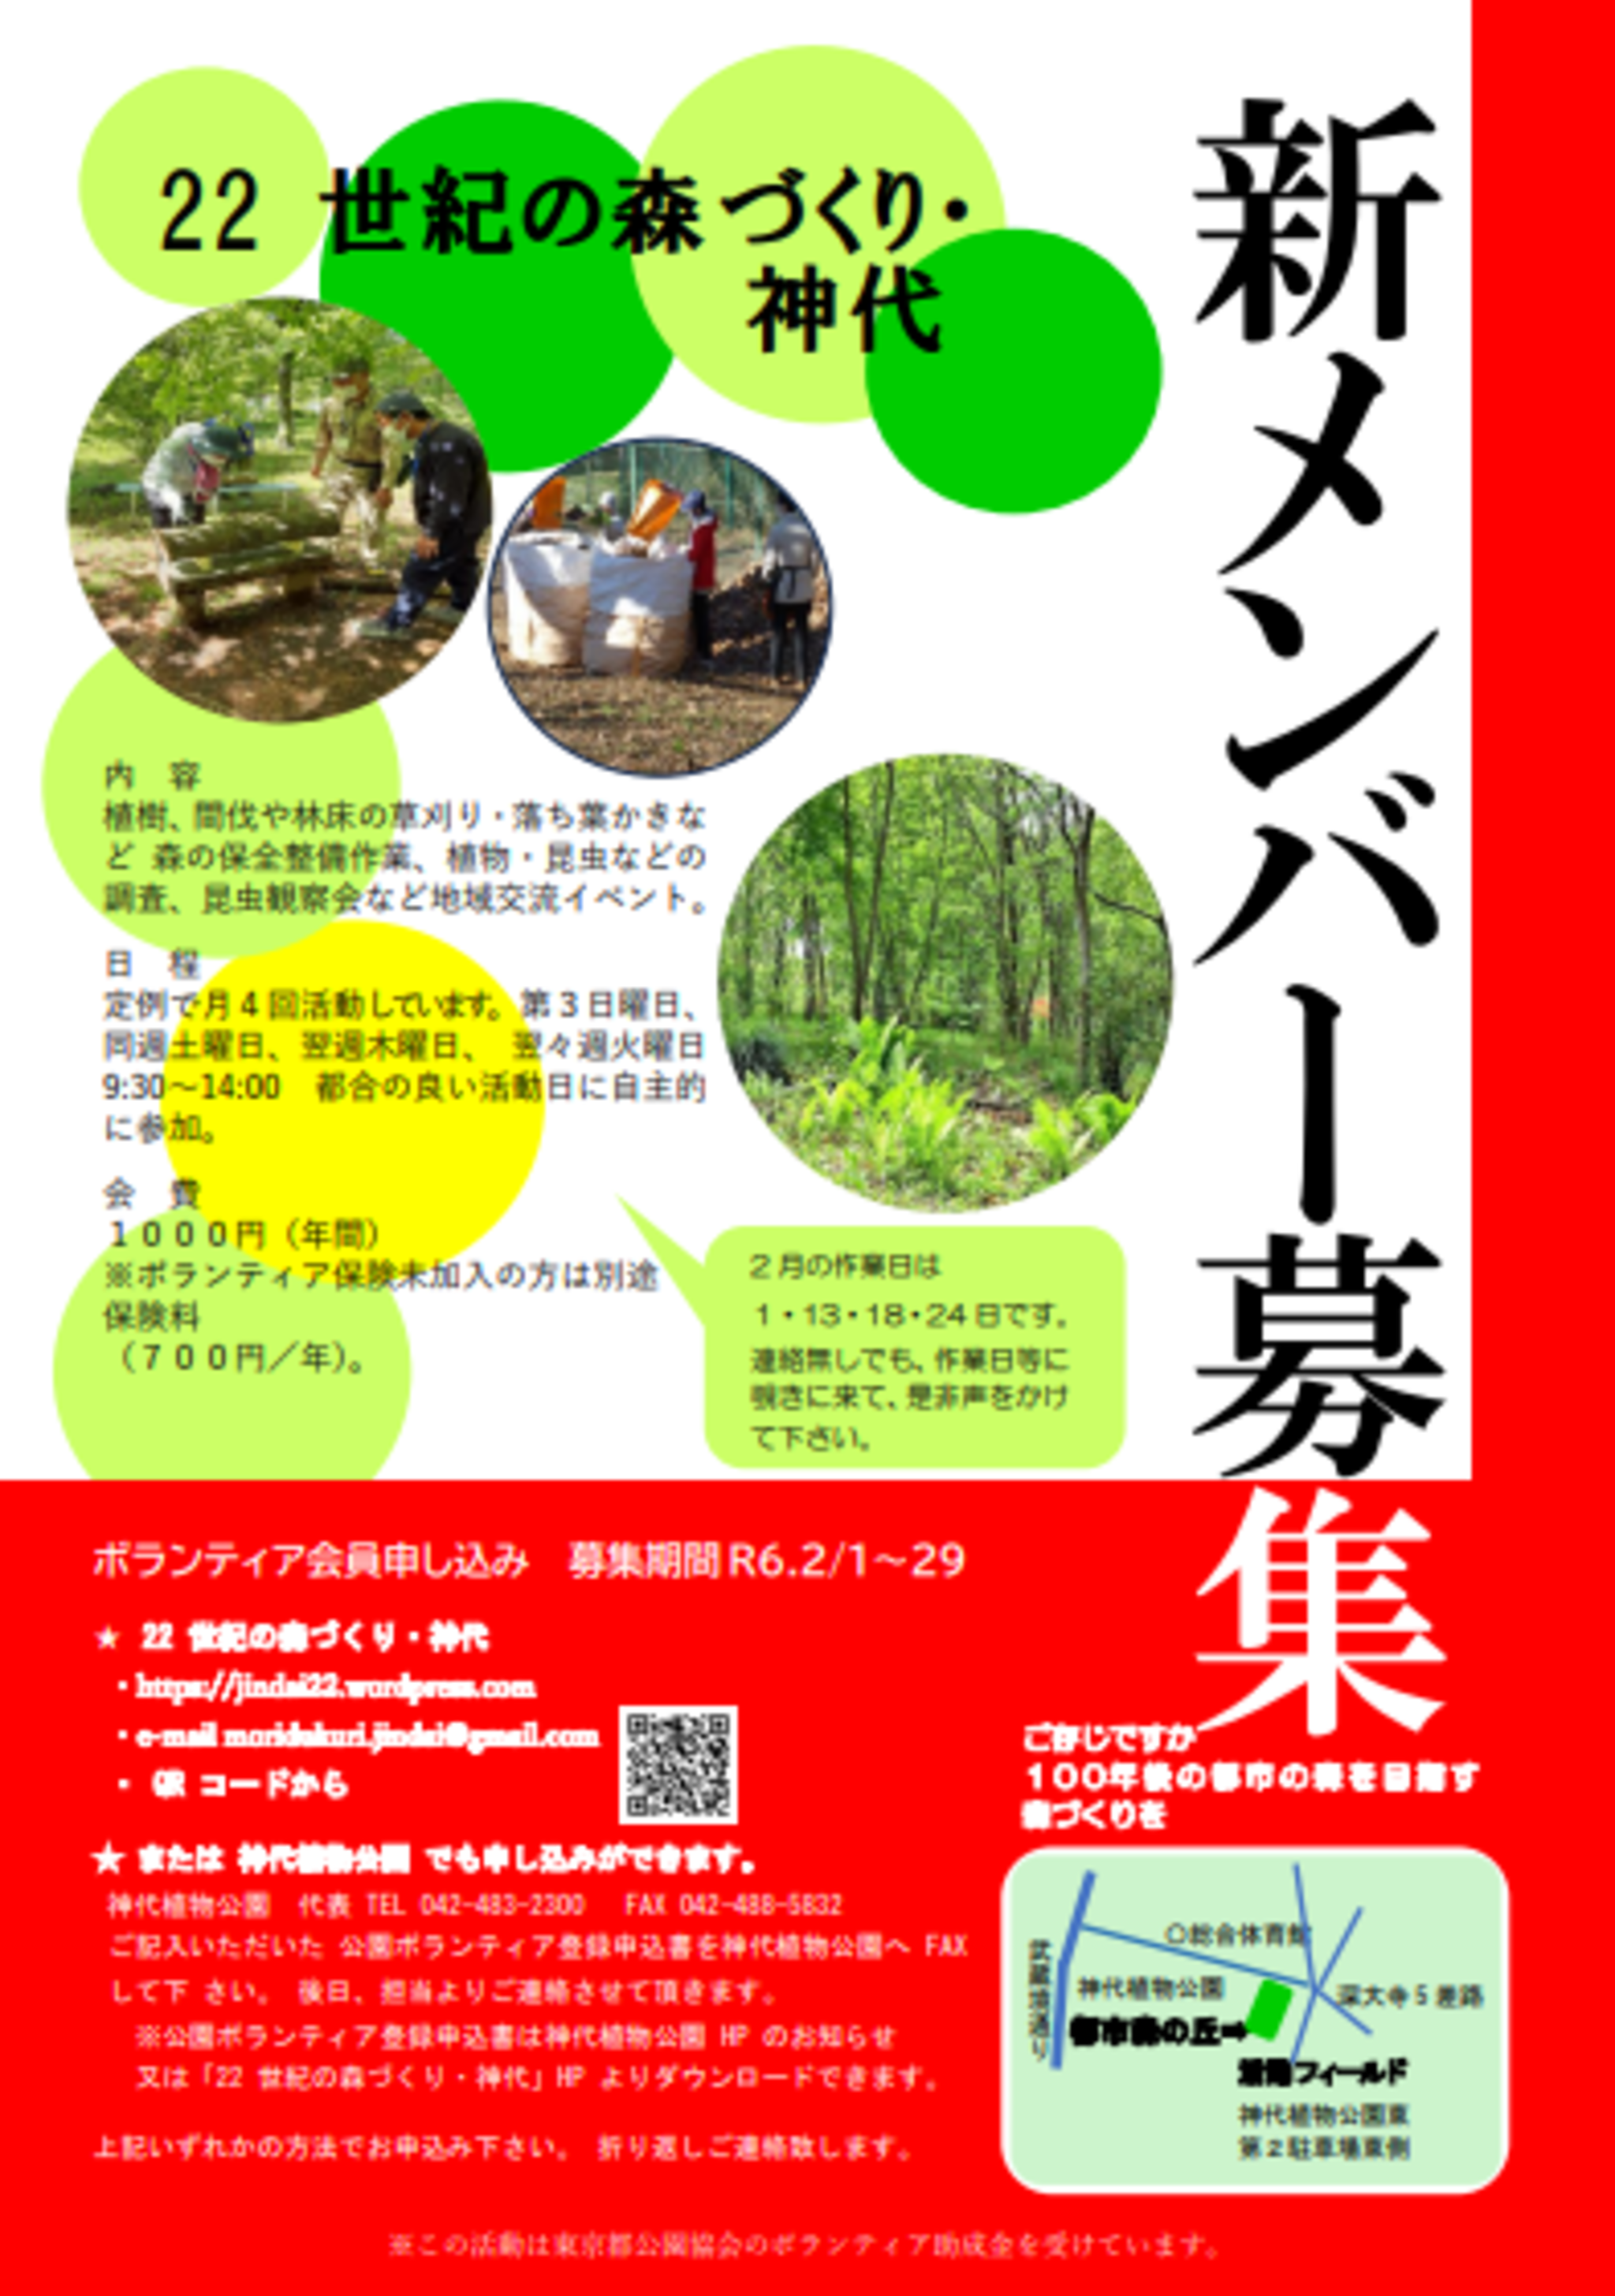 神代植物公園からのお知らせ(「22世紀の森づくり・神代」新メンバー募集のお知らせ)に関する写真